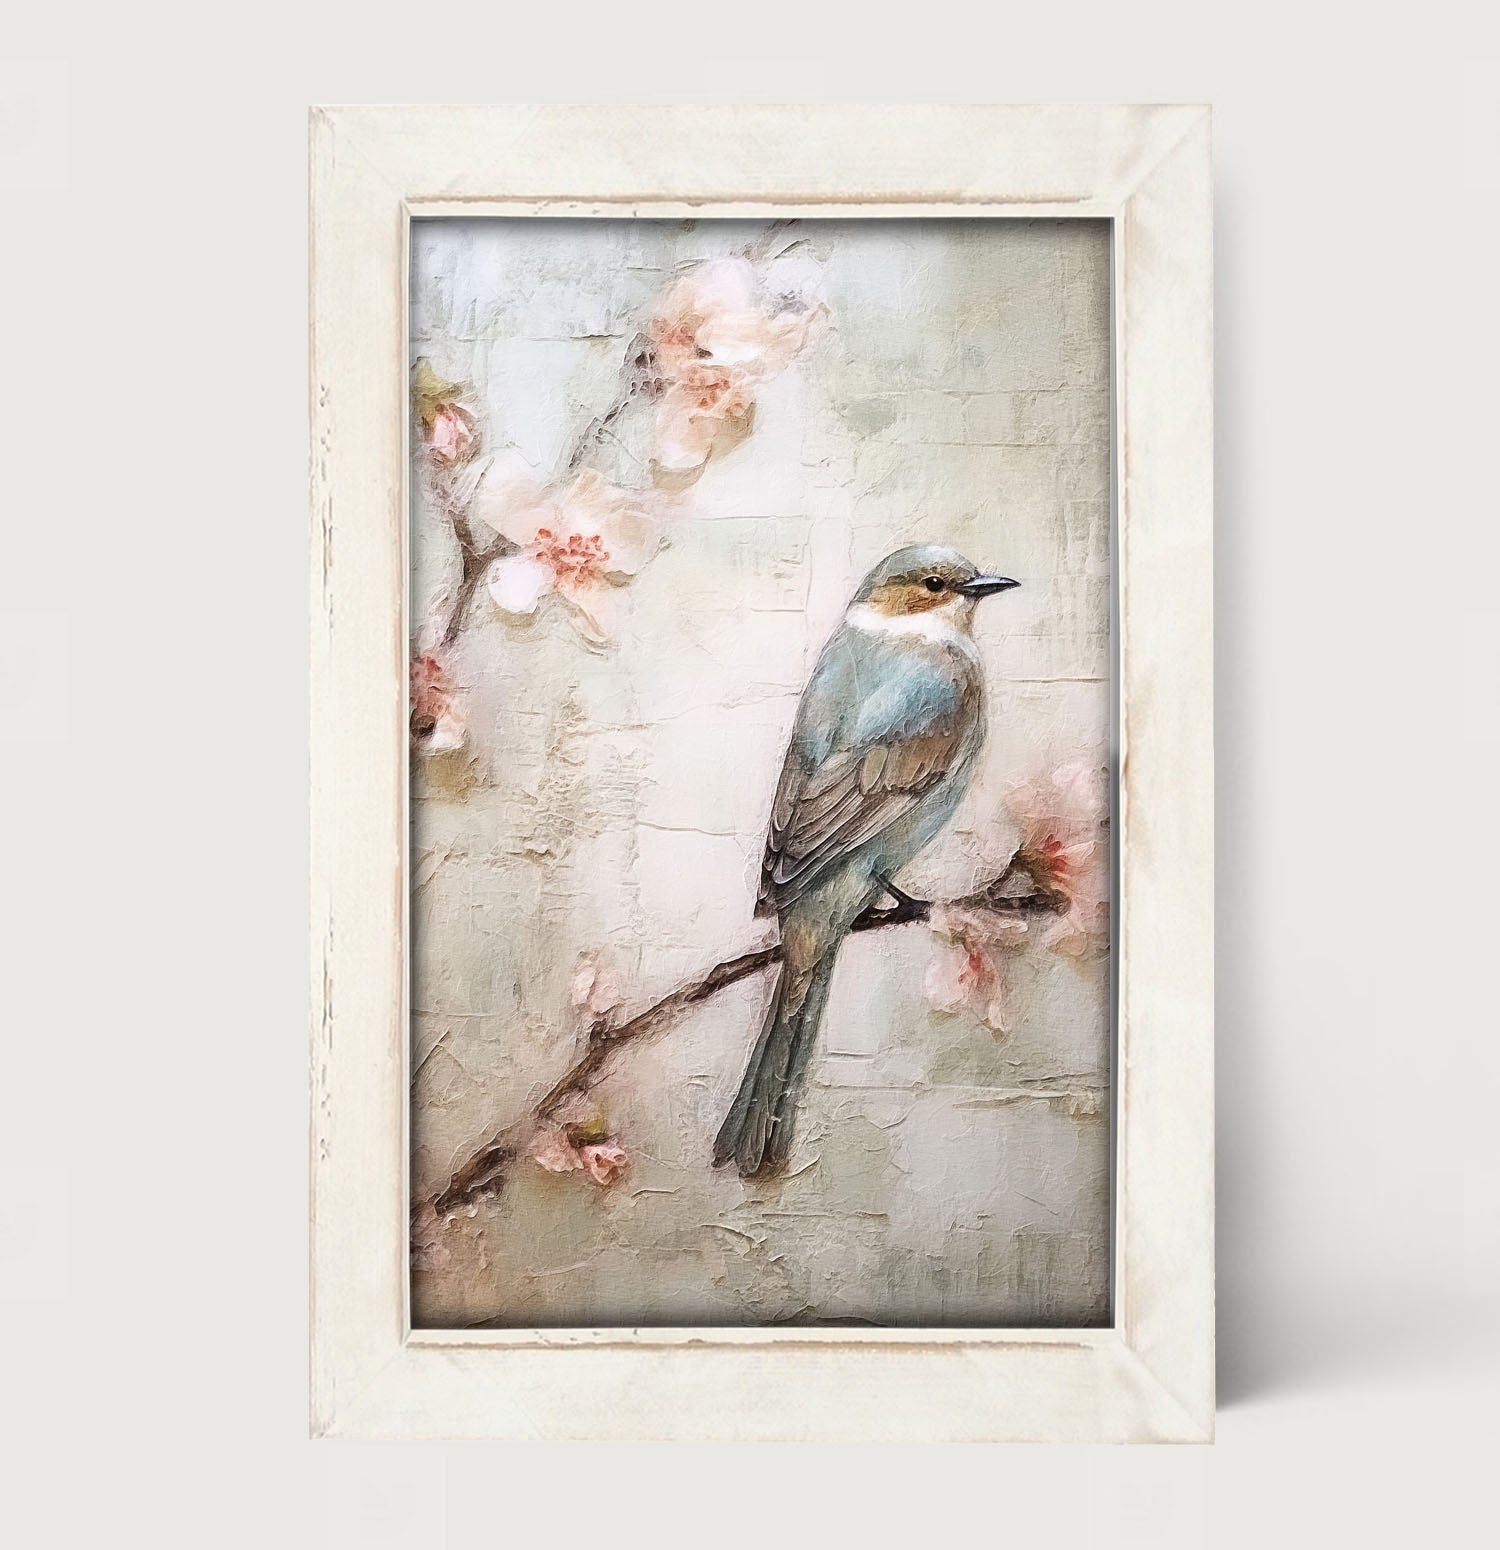 Blue bird on branch - Framed art